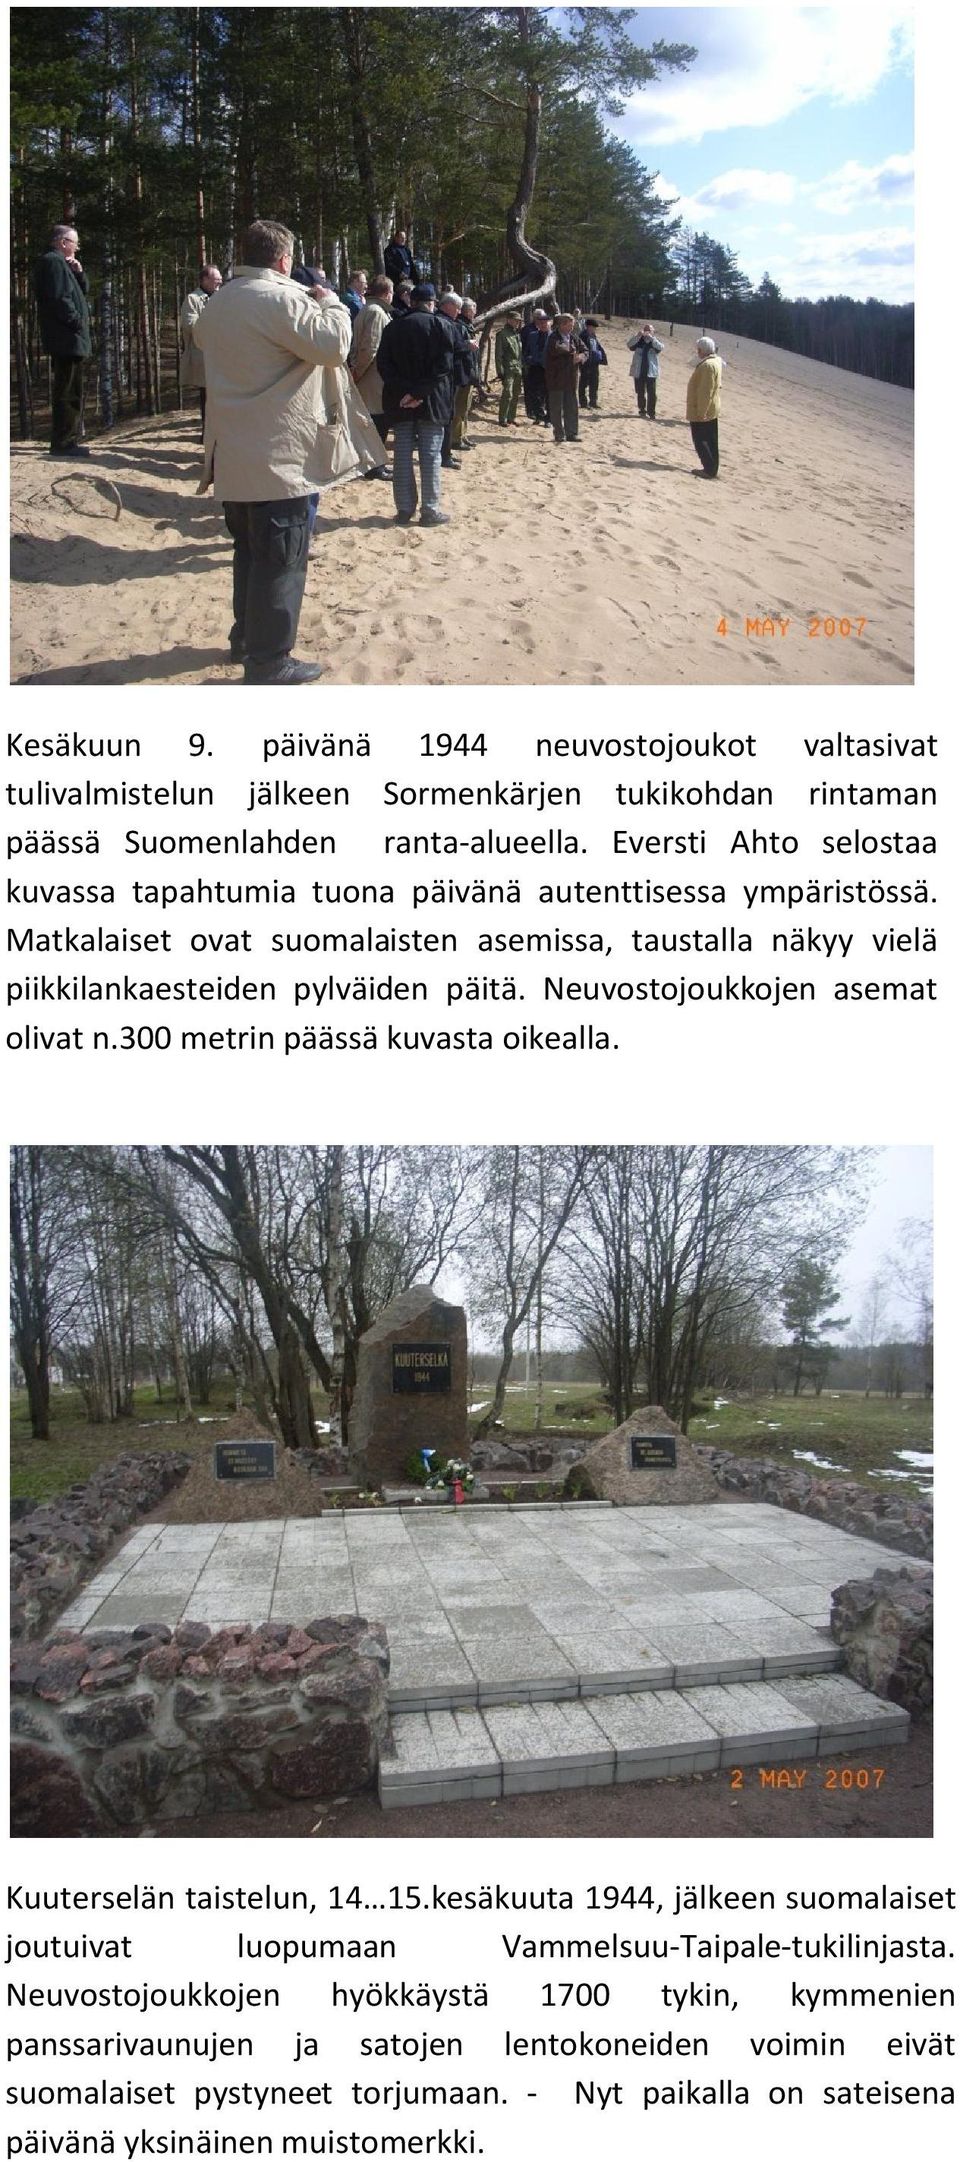 Matkalaiset ovat suomalaisten asemissa, taustalla näkyy vielä piikkilankaesteiden pylväiden päitä. Neuvostojoukkojen asemat olivat n.300 metrin päässä kuvasta oikealla.